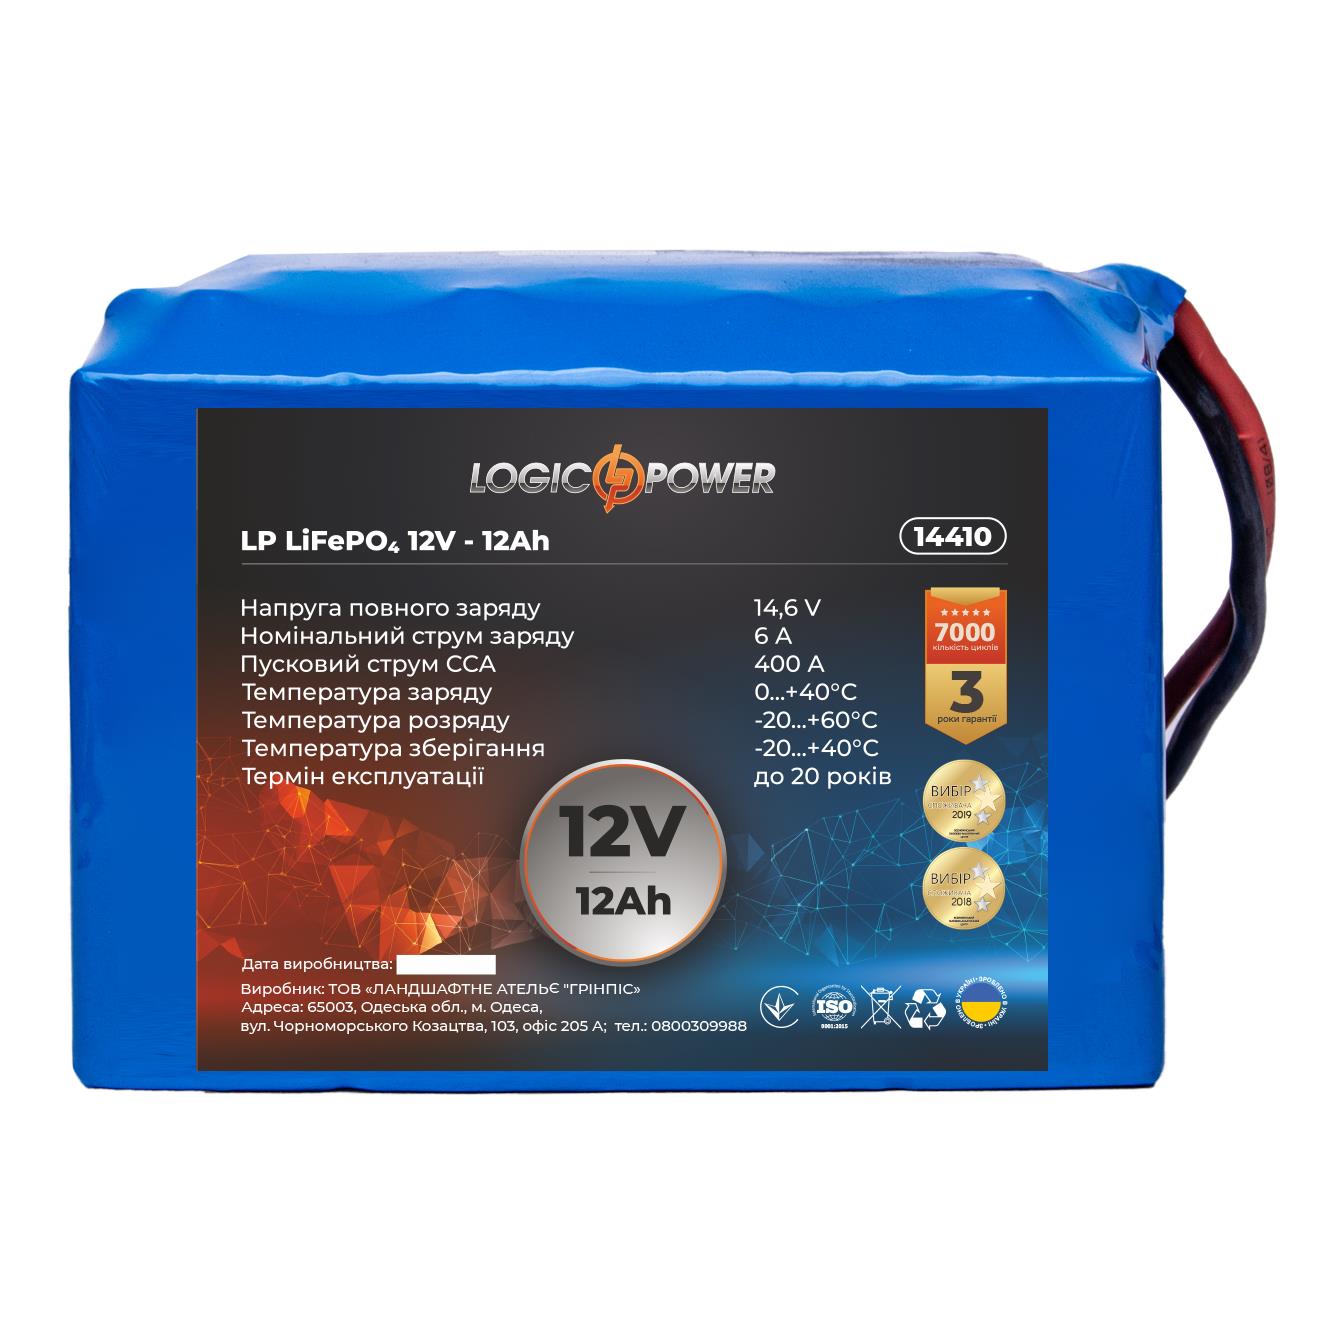 Аккумулятор литий-железо-фосфатный LogicPower LP LiFePO4 12V - 12 Ah для мопеда (14410) в интернет-магазине, главное фото